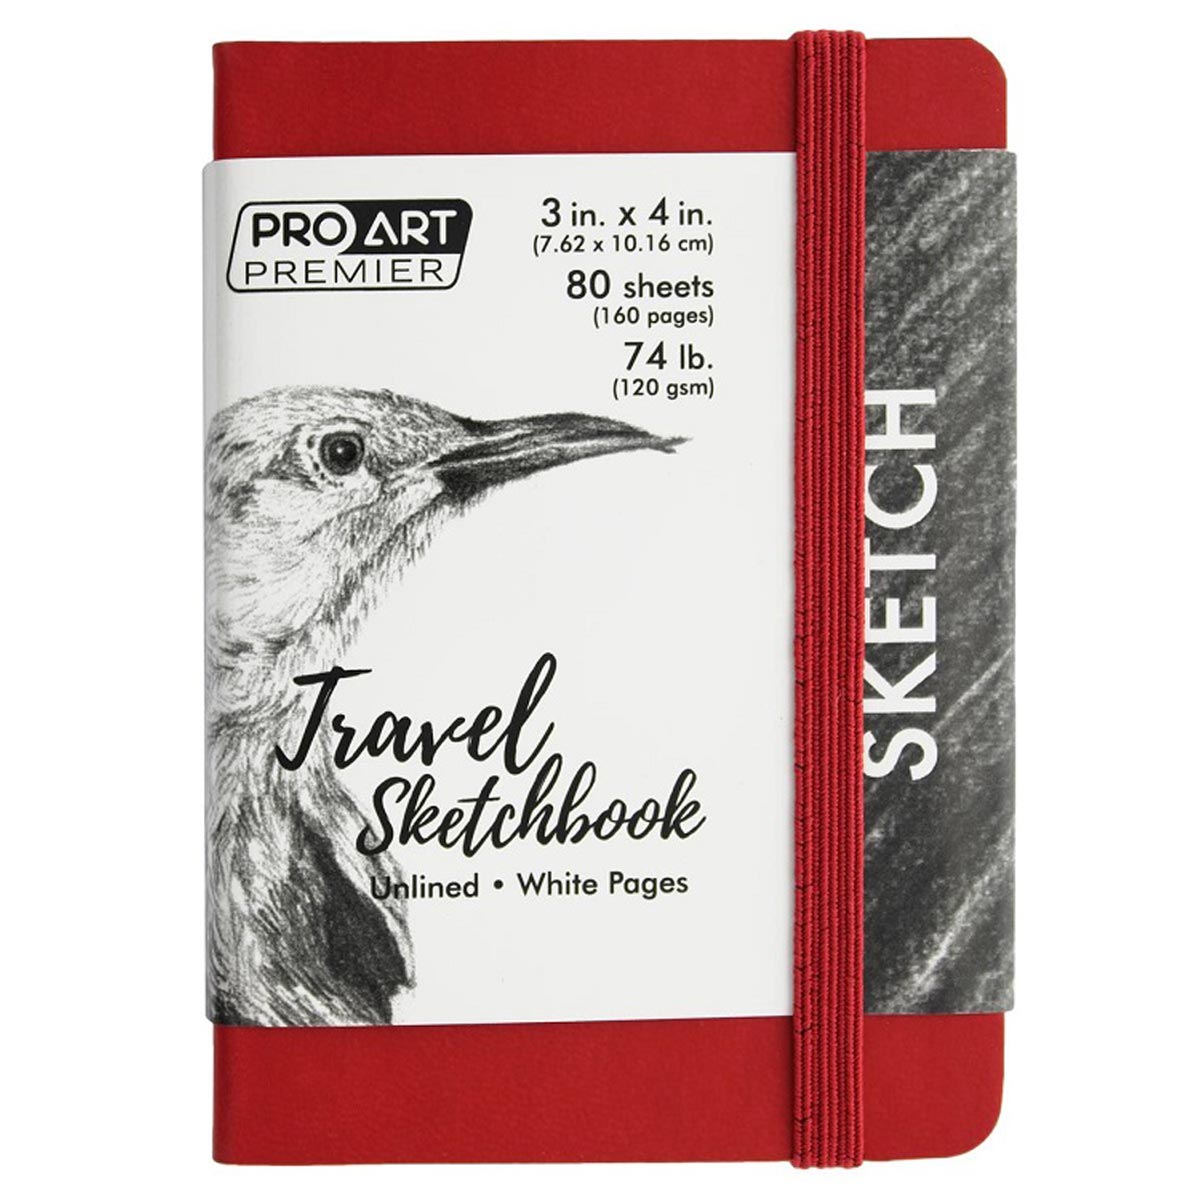 Pro Art Premier Travel Sketchbook 3